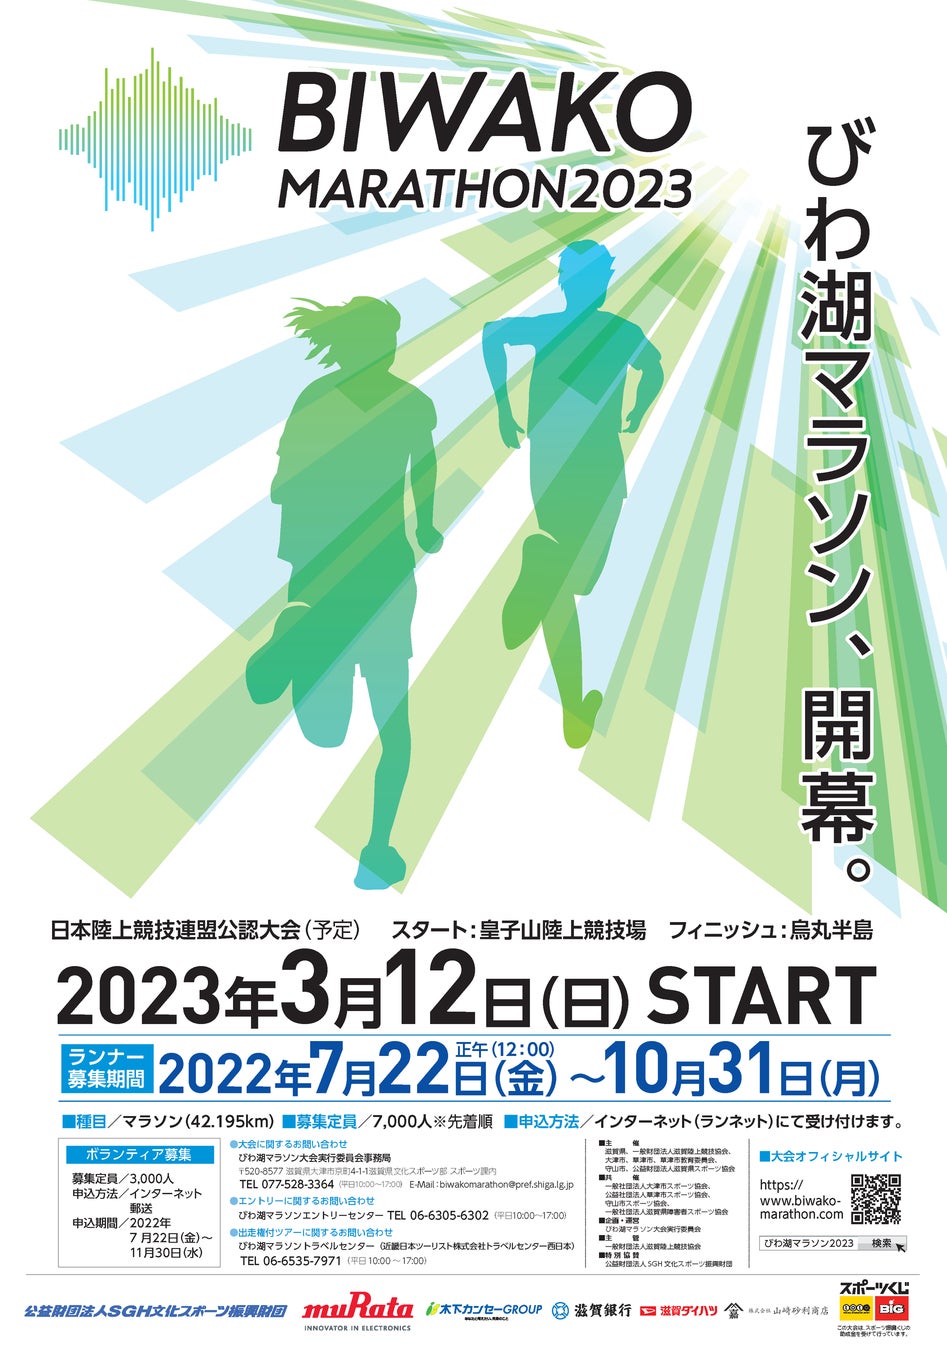 「びわ湖マラソン2023」７月22日(金)から参加ランナー7,000人のエントリー開始!!